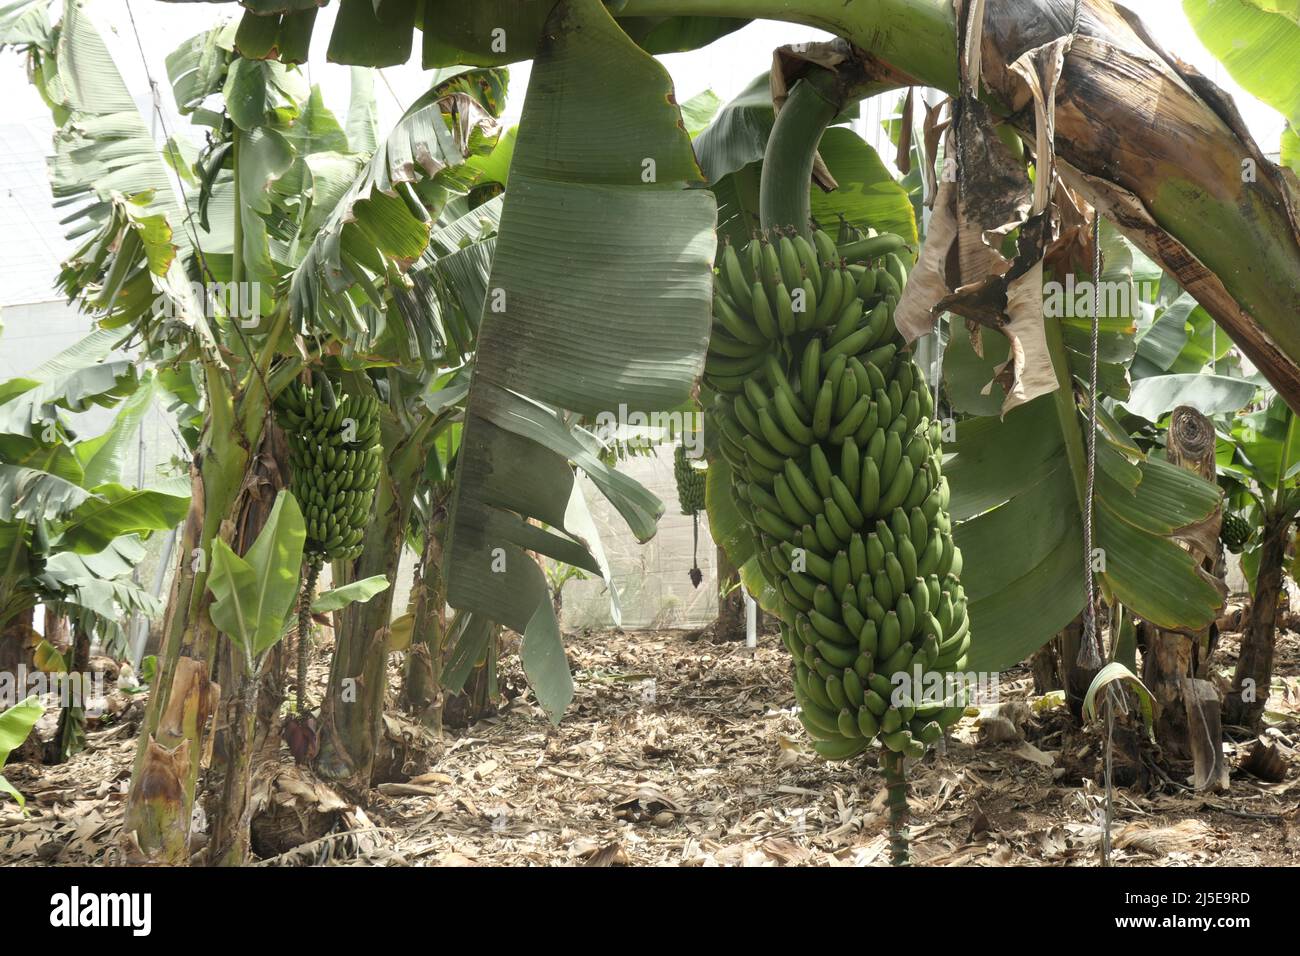 Bananenplantage, Aldea de San Nicolás, Gran Canaria Foto Stock